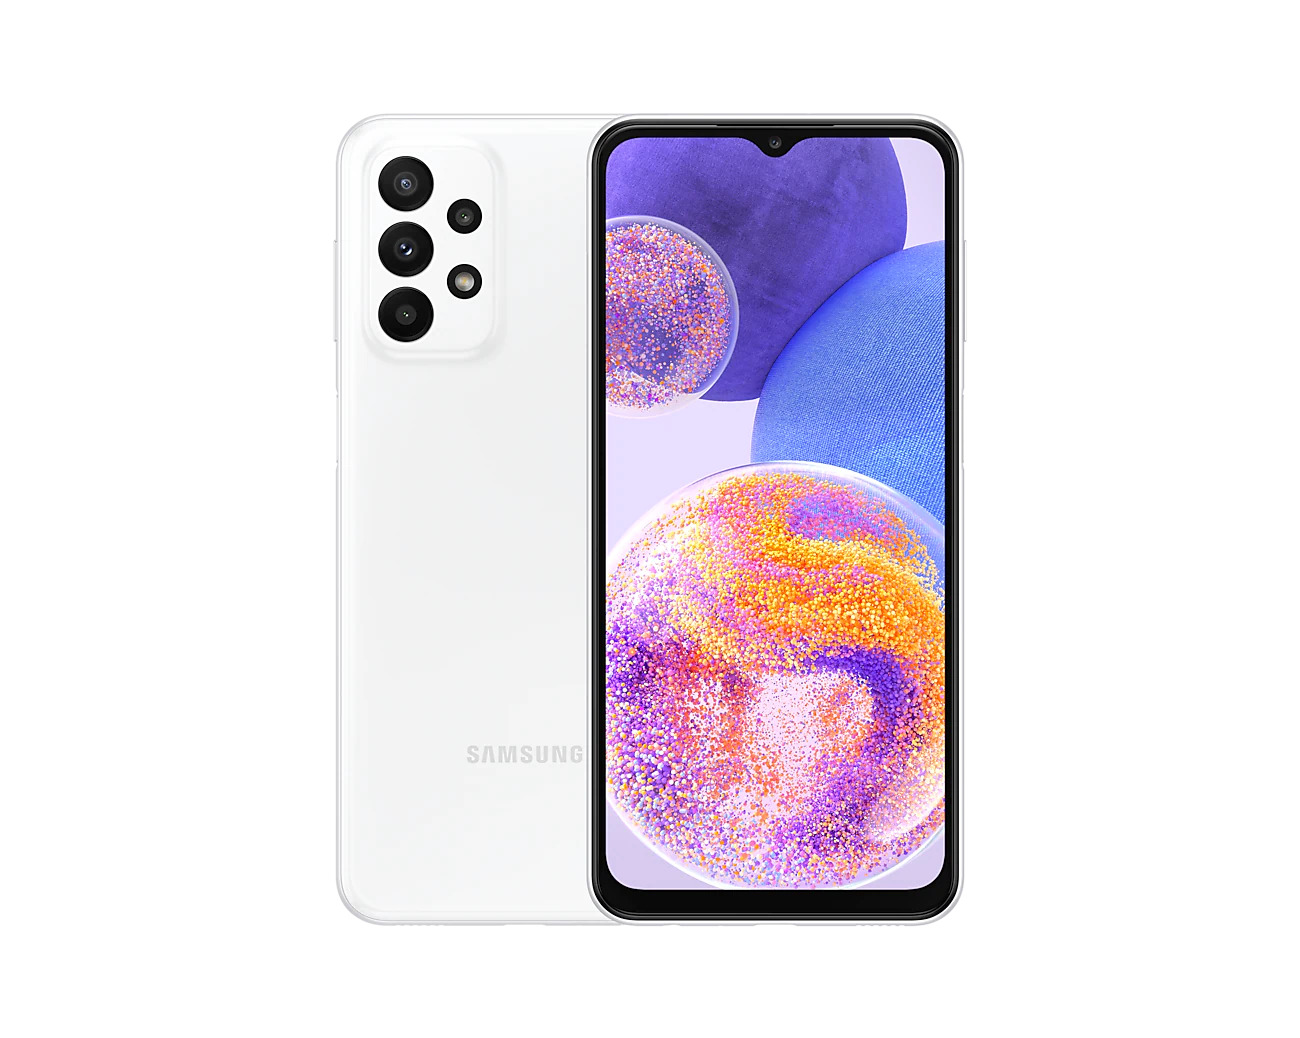 گوشی موبایل سامسونگ Galaxy A23 4G رنگ سفید white color